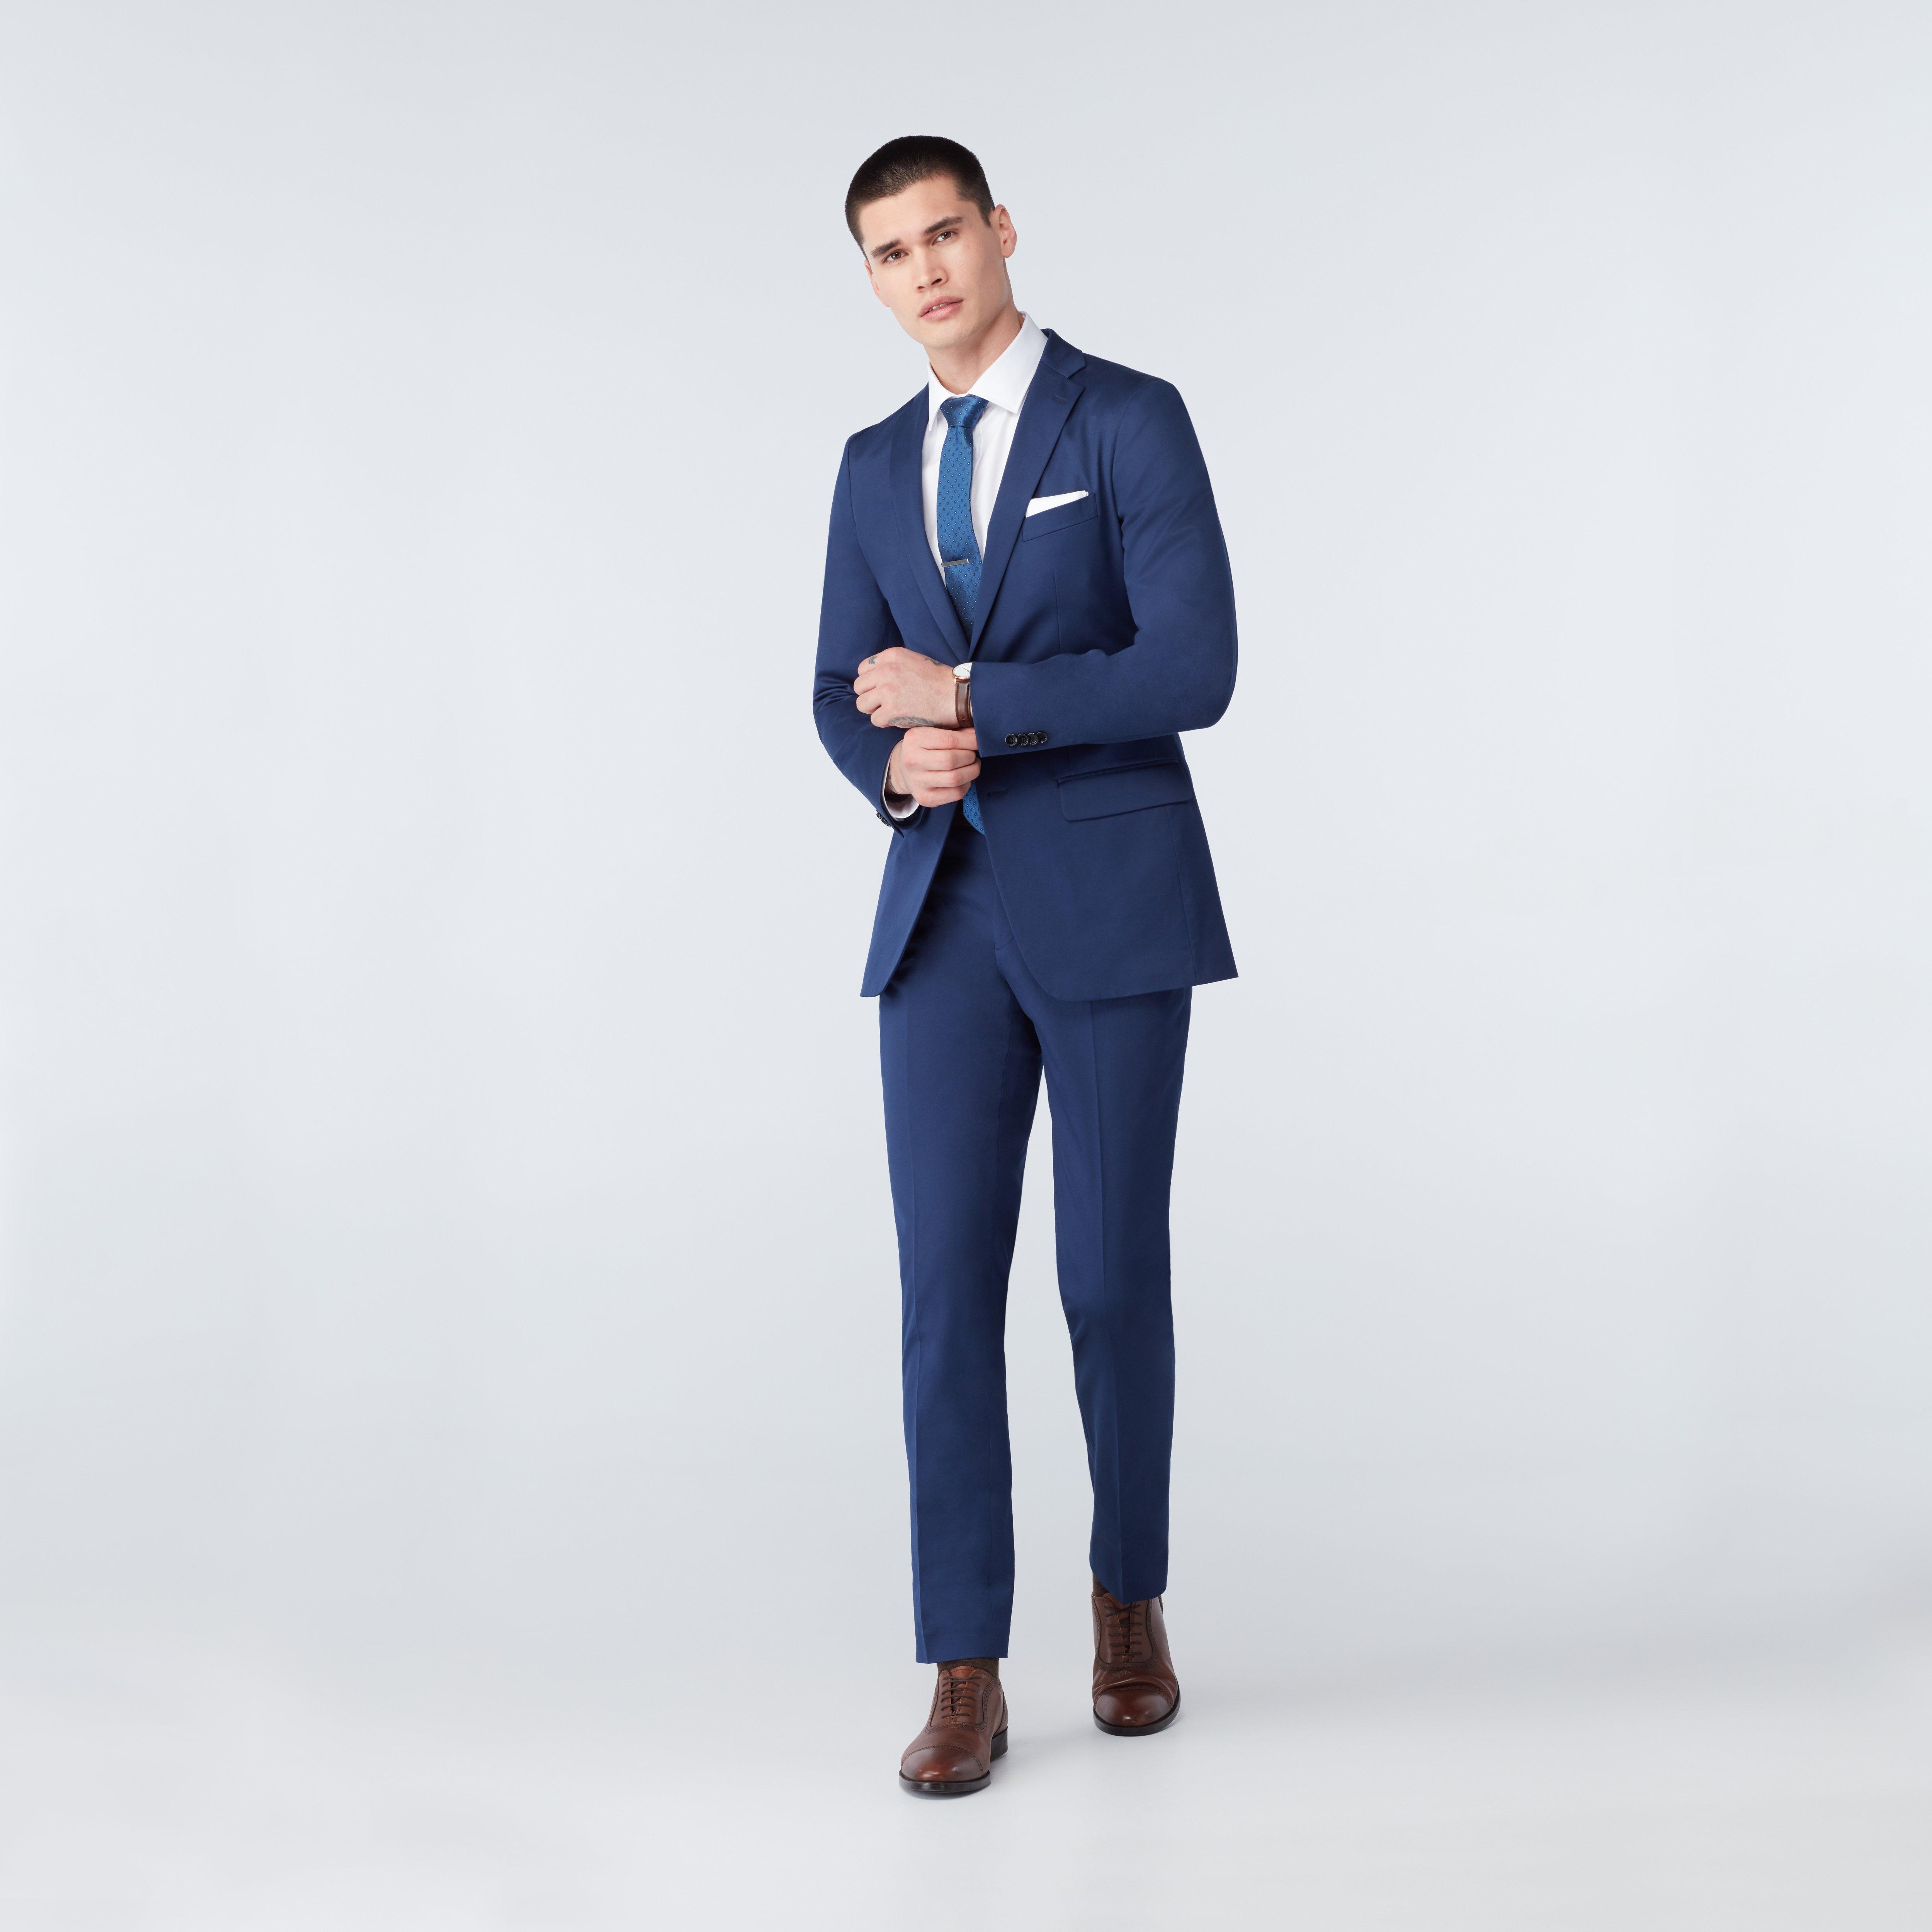 M7182-NP-PK: Blue Modern Fit 3 Piece Suit